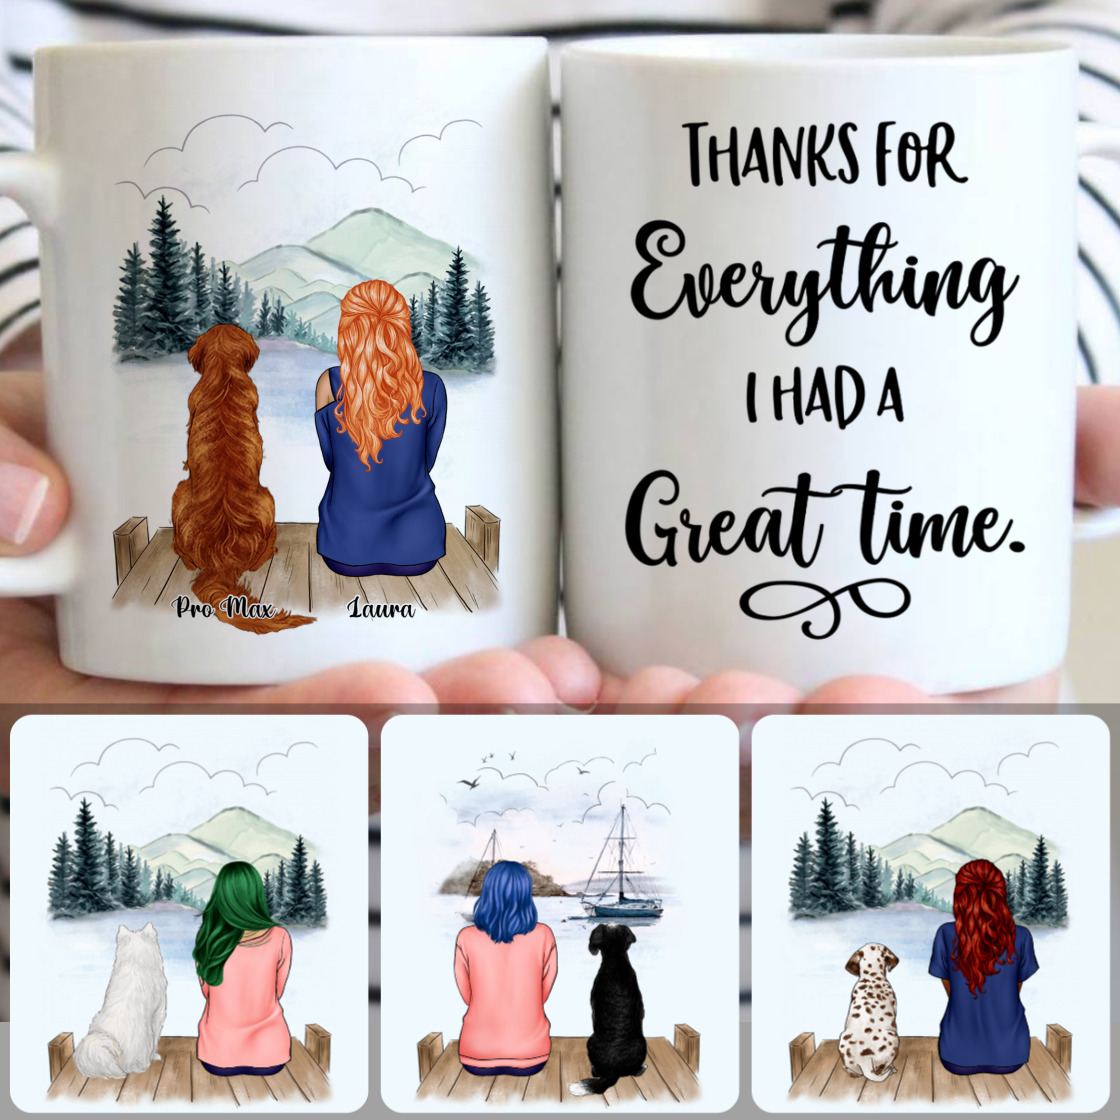 Personalized Mug, Memorial Gifts For Grandma Nana Grandmother, Girl & Dog Customized Coffee Mug With Names